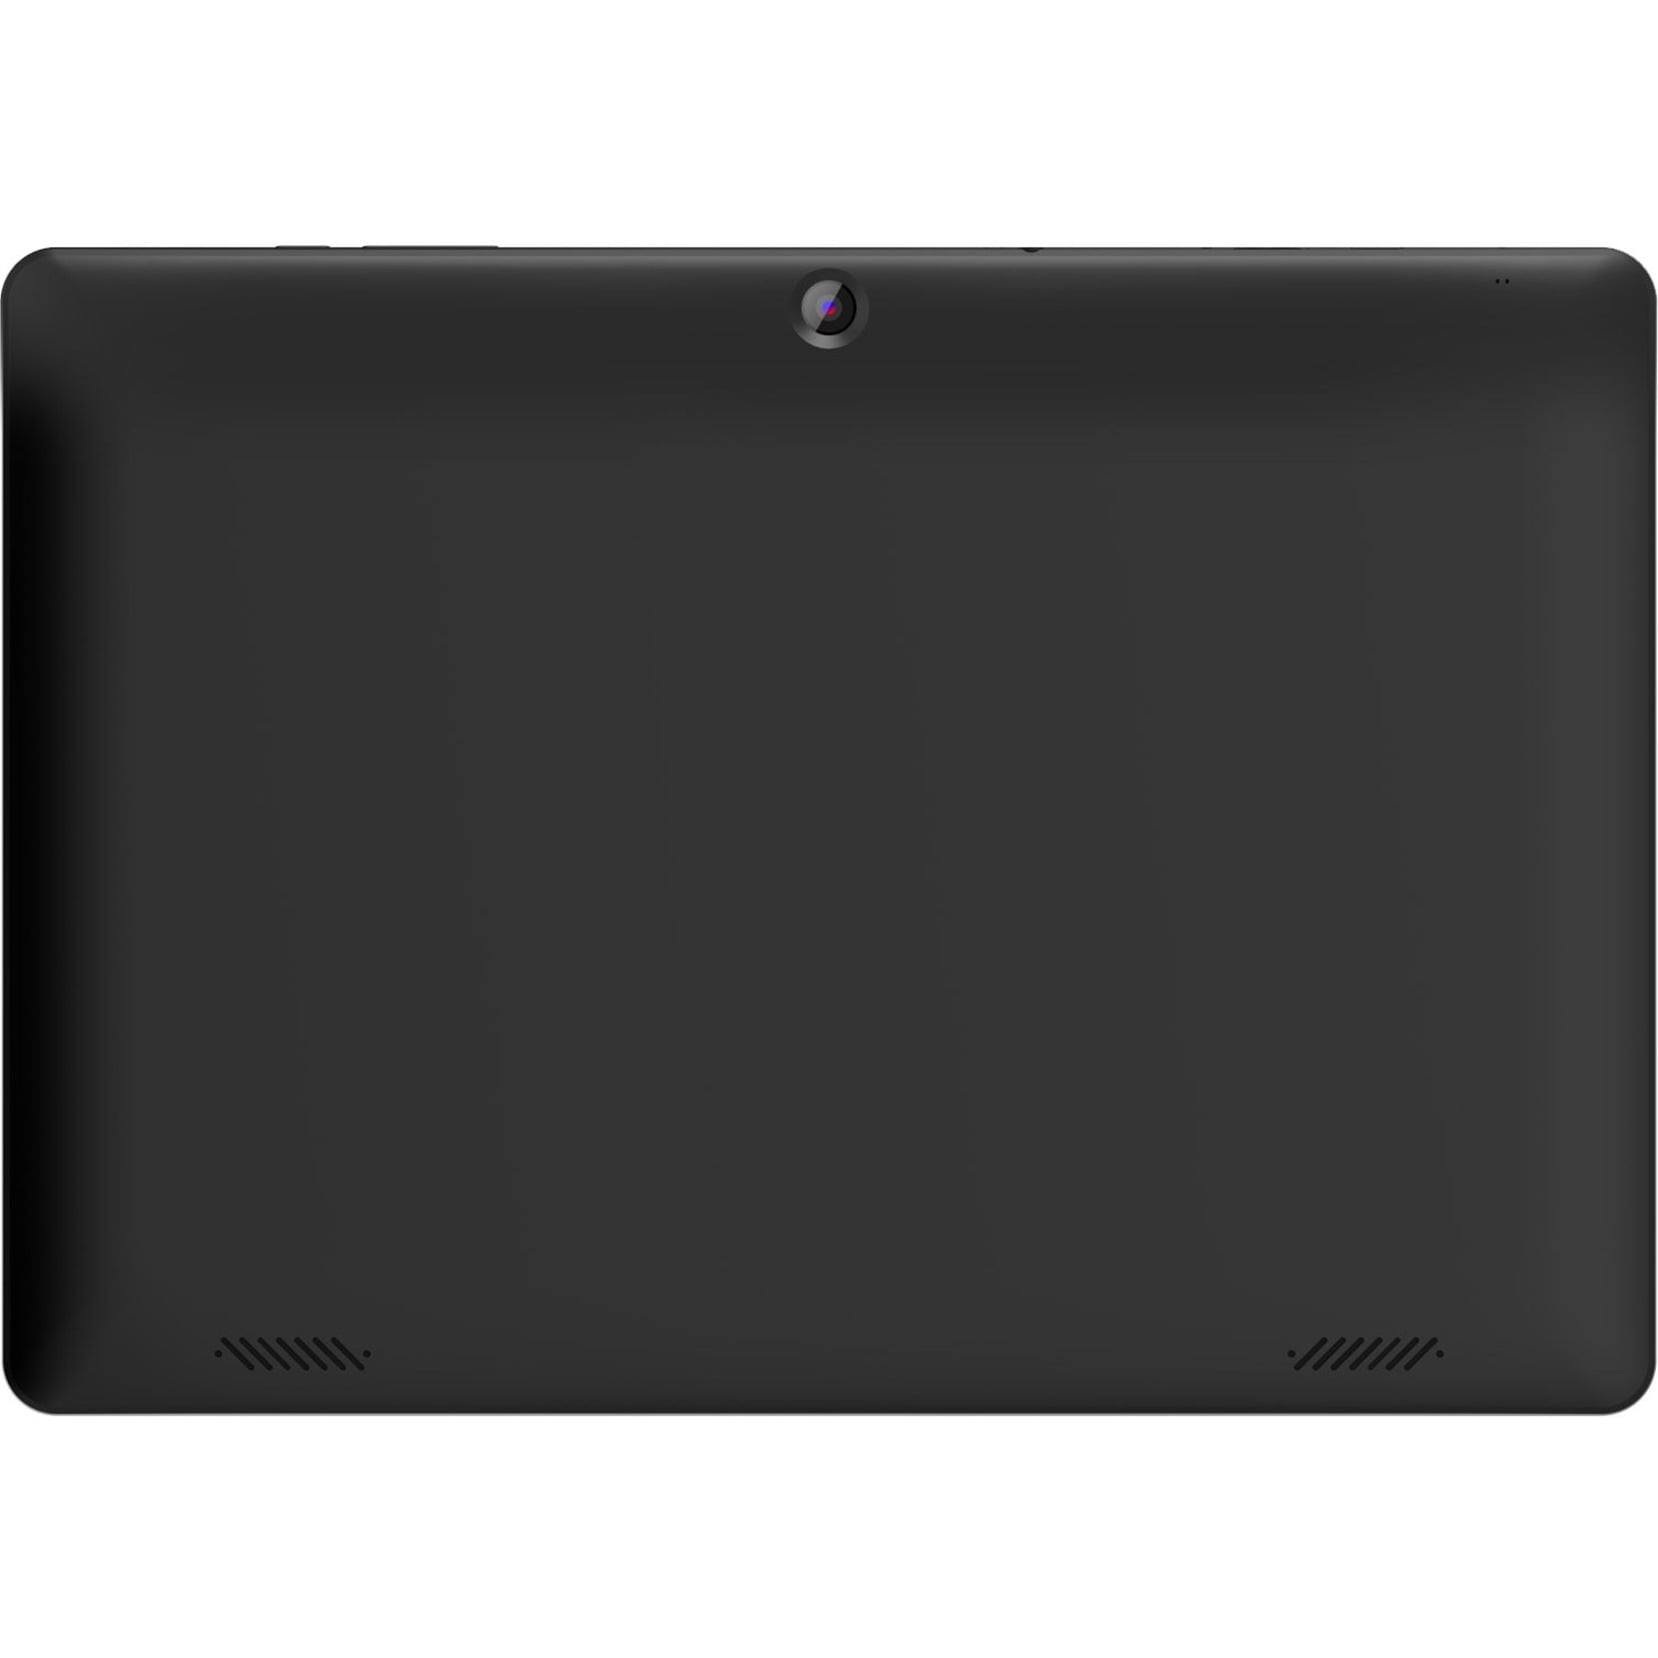 A1080 - Tablette Android 10 Q OS 10,1 pouces, certifiée Google